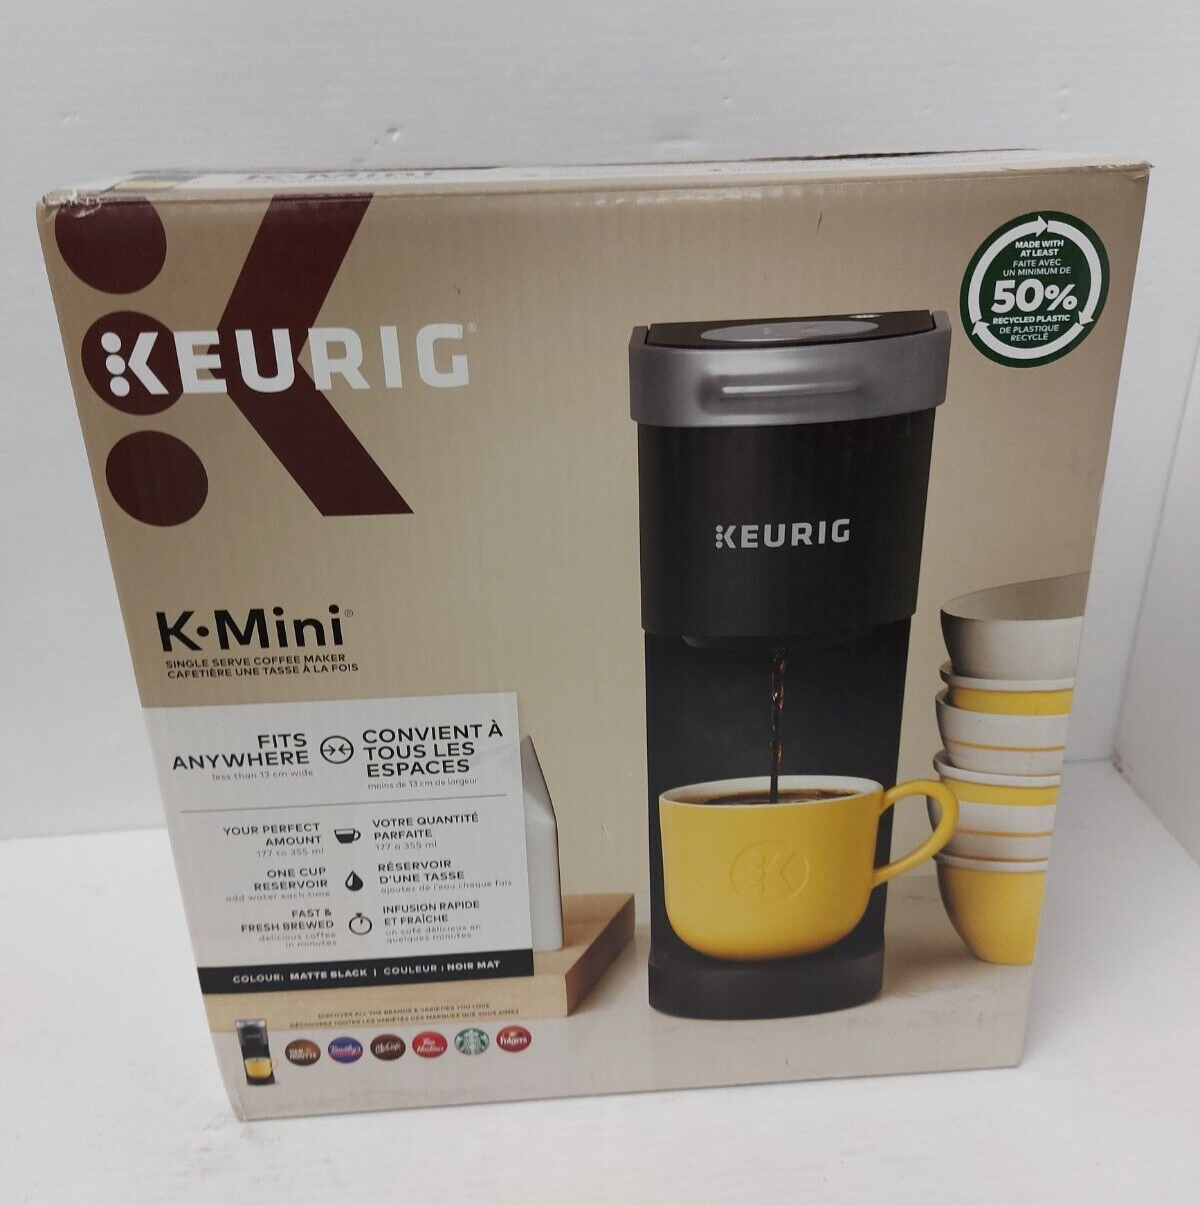 (N81706-1) Keurig K-Mini Coffee Maker